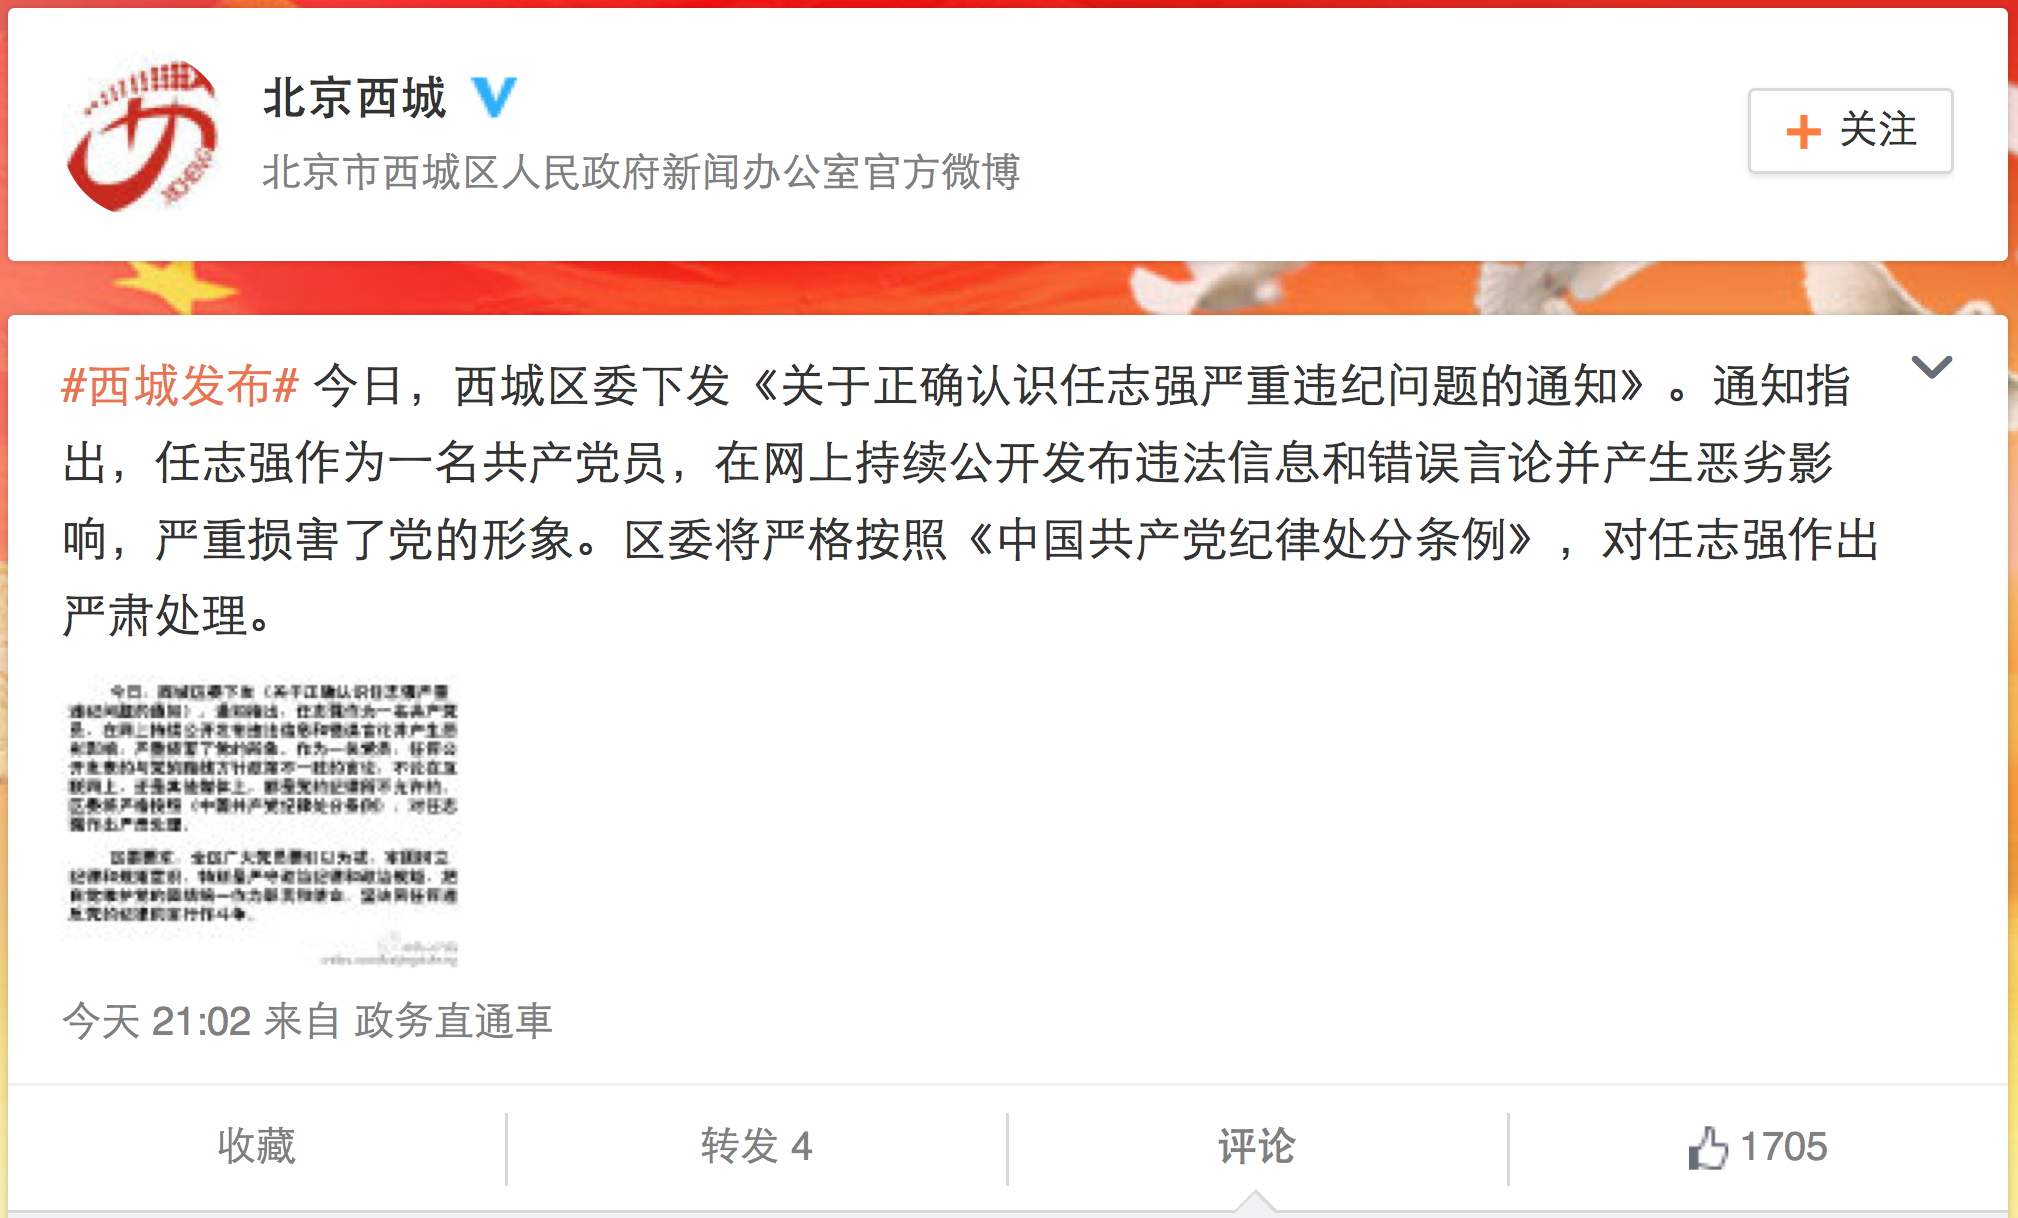 北京西城区委发布的微博无法评论、转发